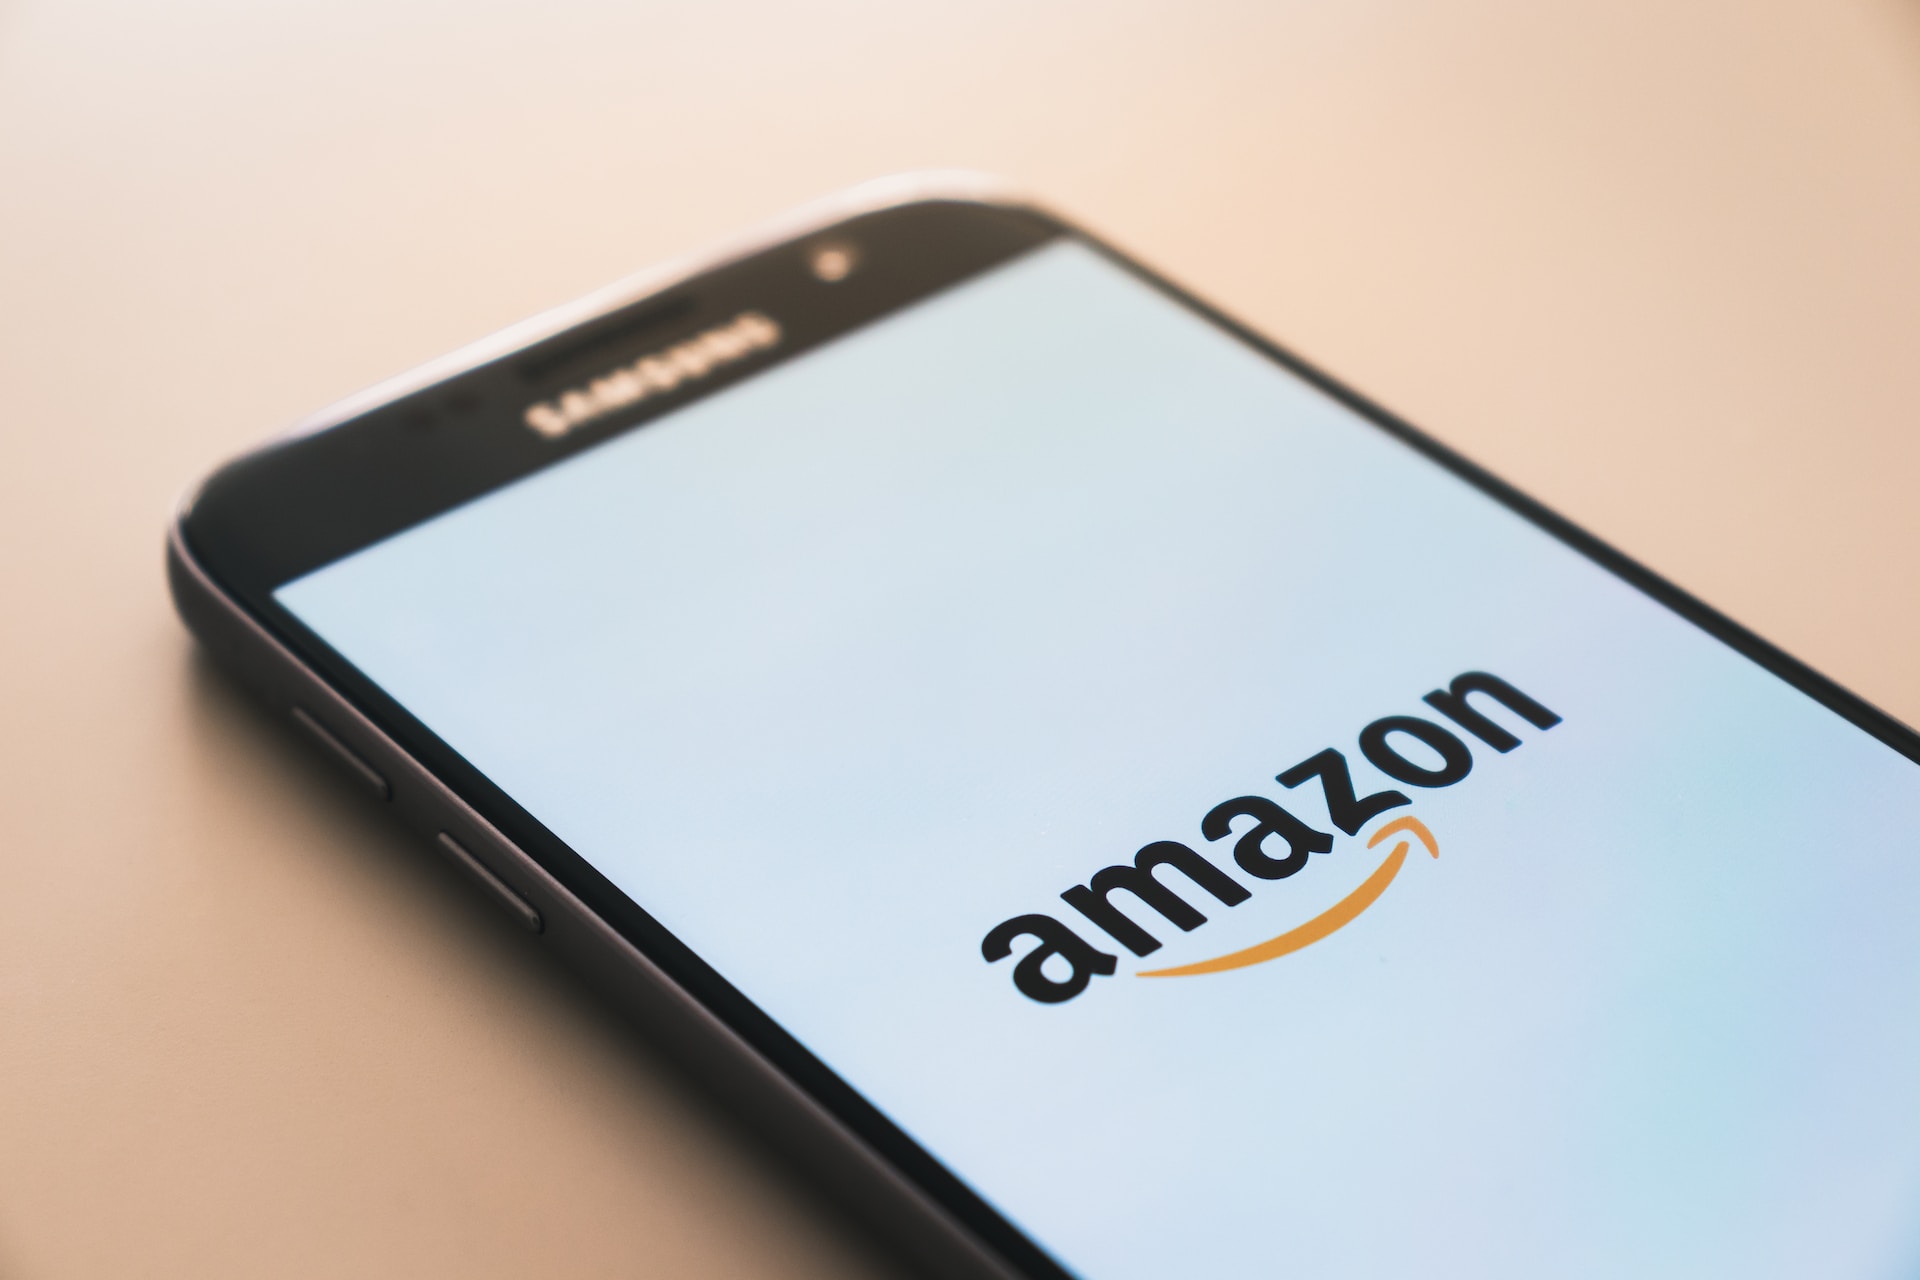 Amazon Shuts Down Man’s “Entire” Smart Home